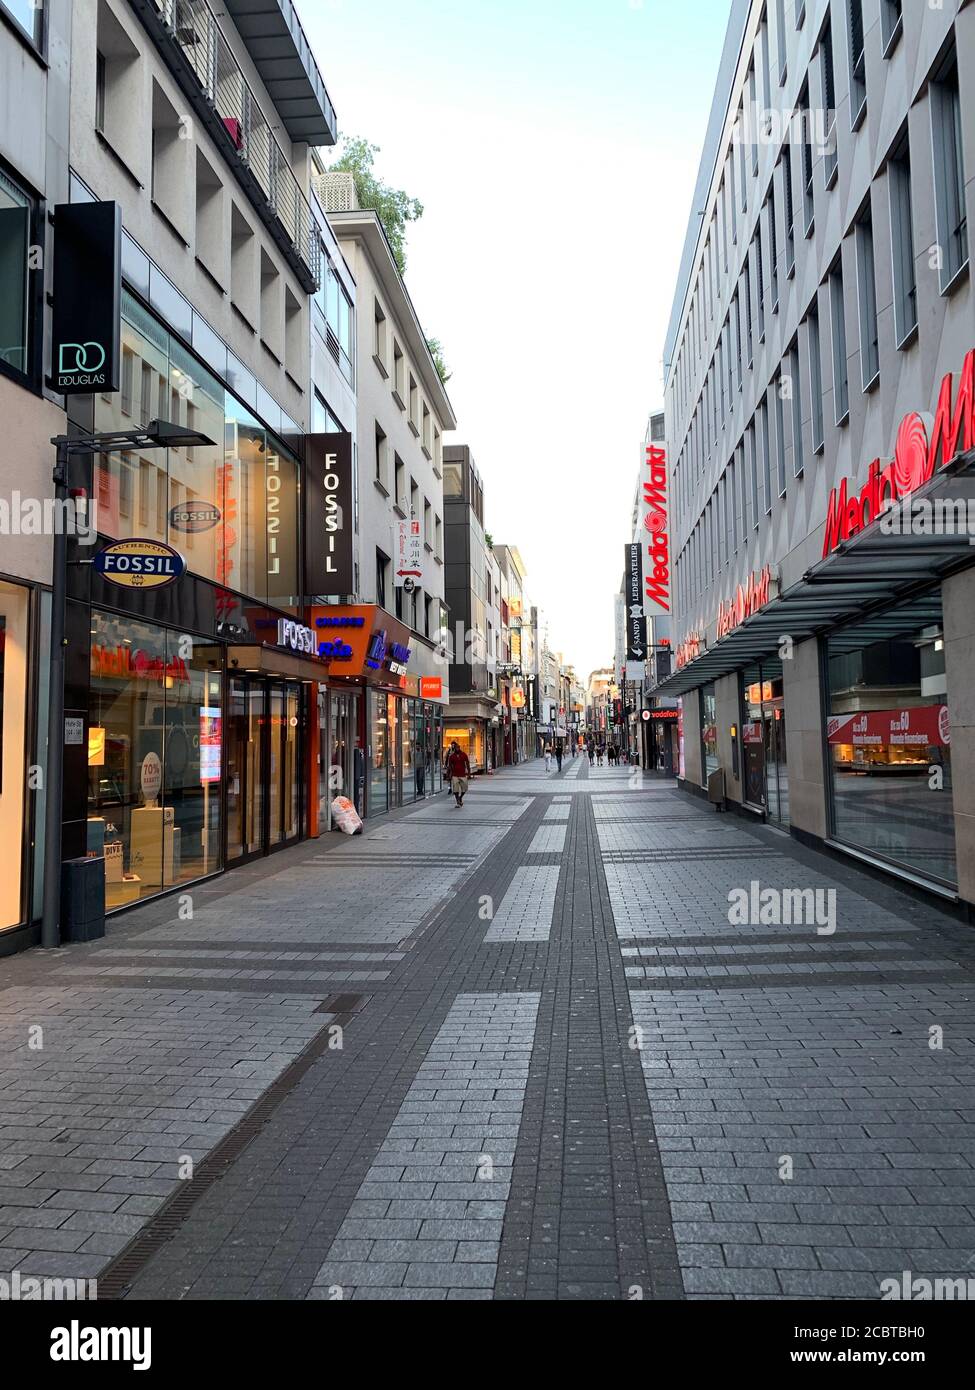 Tiendas peatonales calle Hohe en el centro de la ciudad. Colonia Koln, Renania del Norte-Westfalia / Alemania. Foto de stock